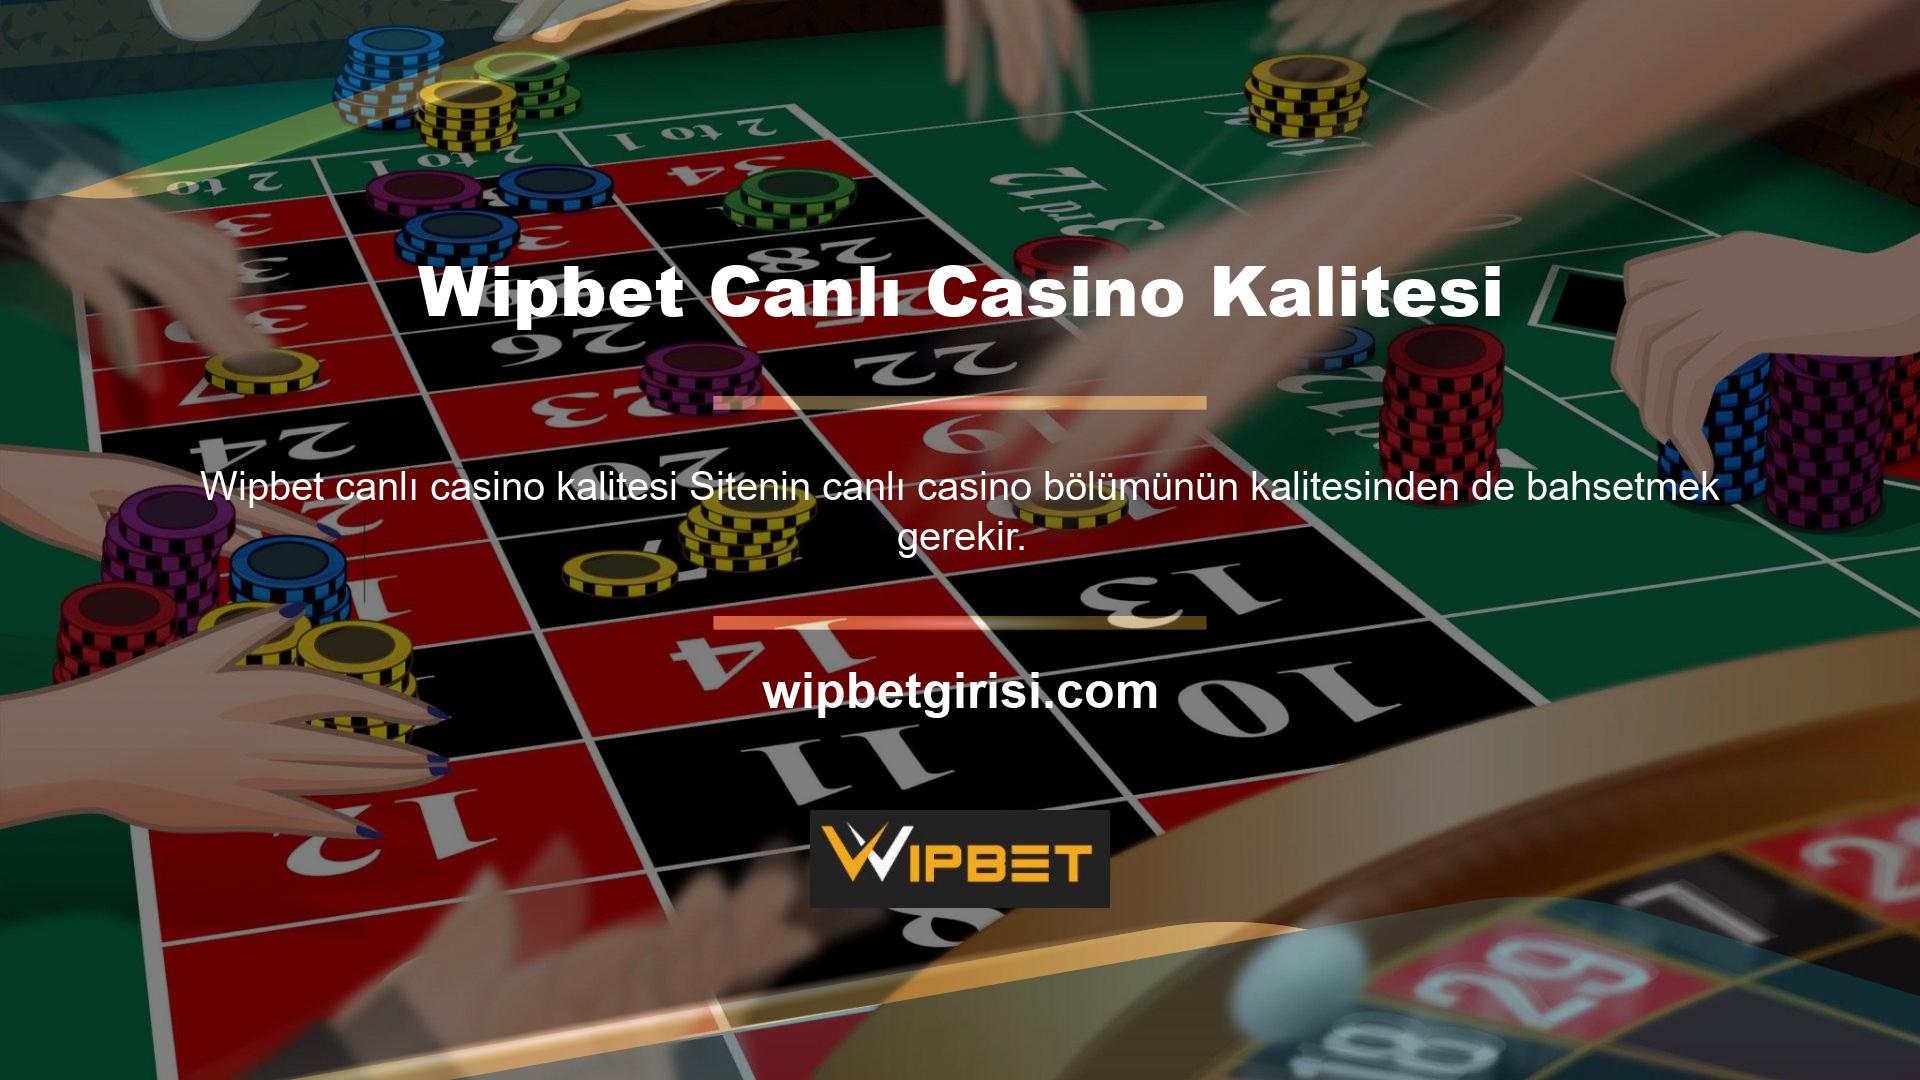 Bu nedenle, Wipbet Canlı Casino kalitesinin genel bir ölçümü gerekli olabilir